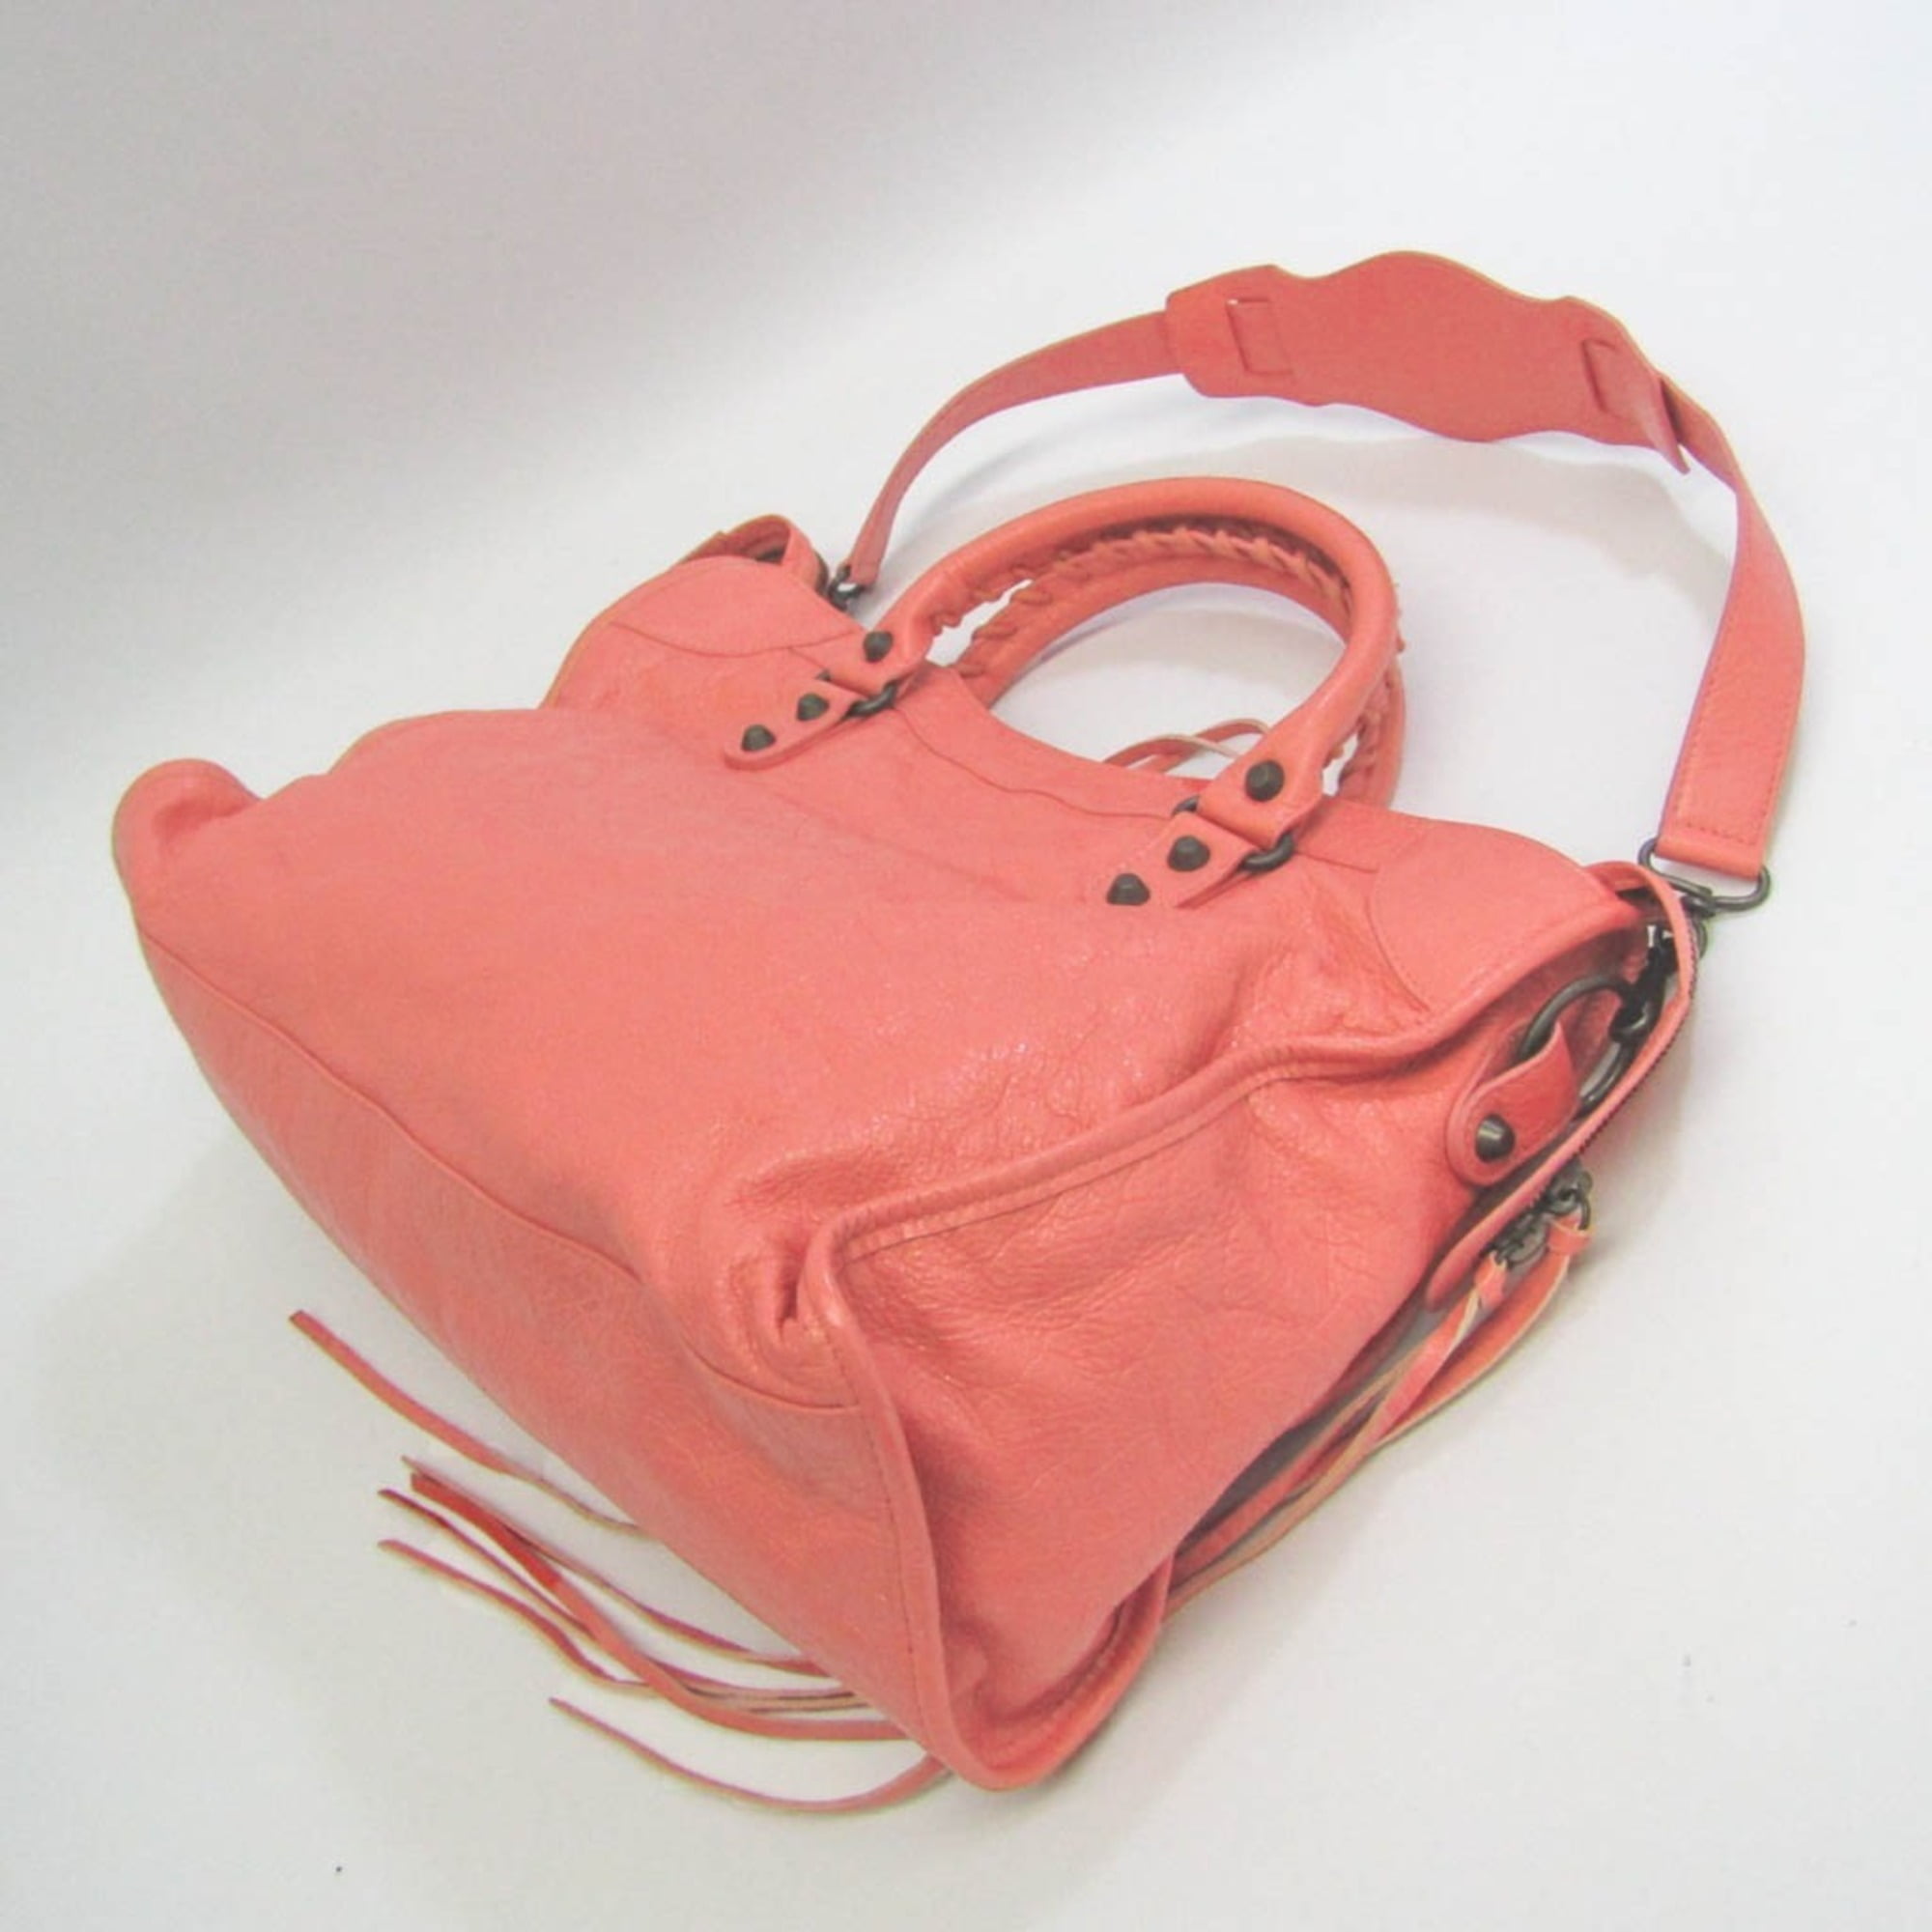 Authenticated used Balenciaga City 115748 Women's Leather Handbag,Shoulder Bag Light Pink, Adult Unisex, Size: (HxWxD): 23cm x 38cm x 14cm / 9.05'' x